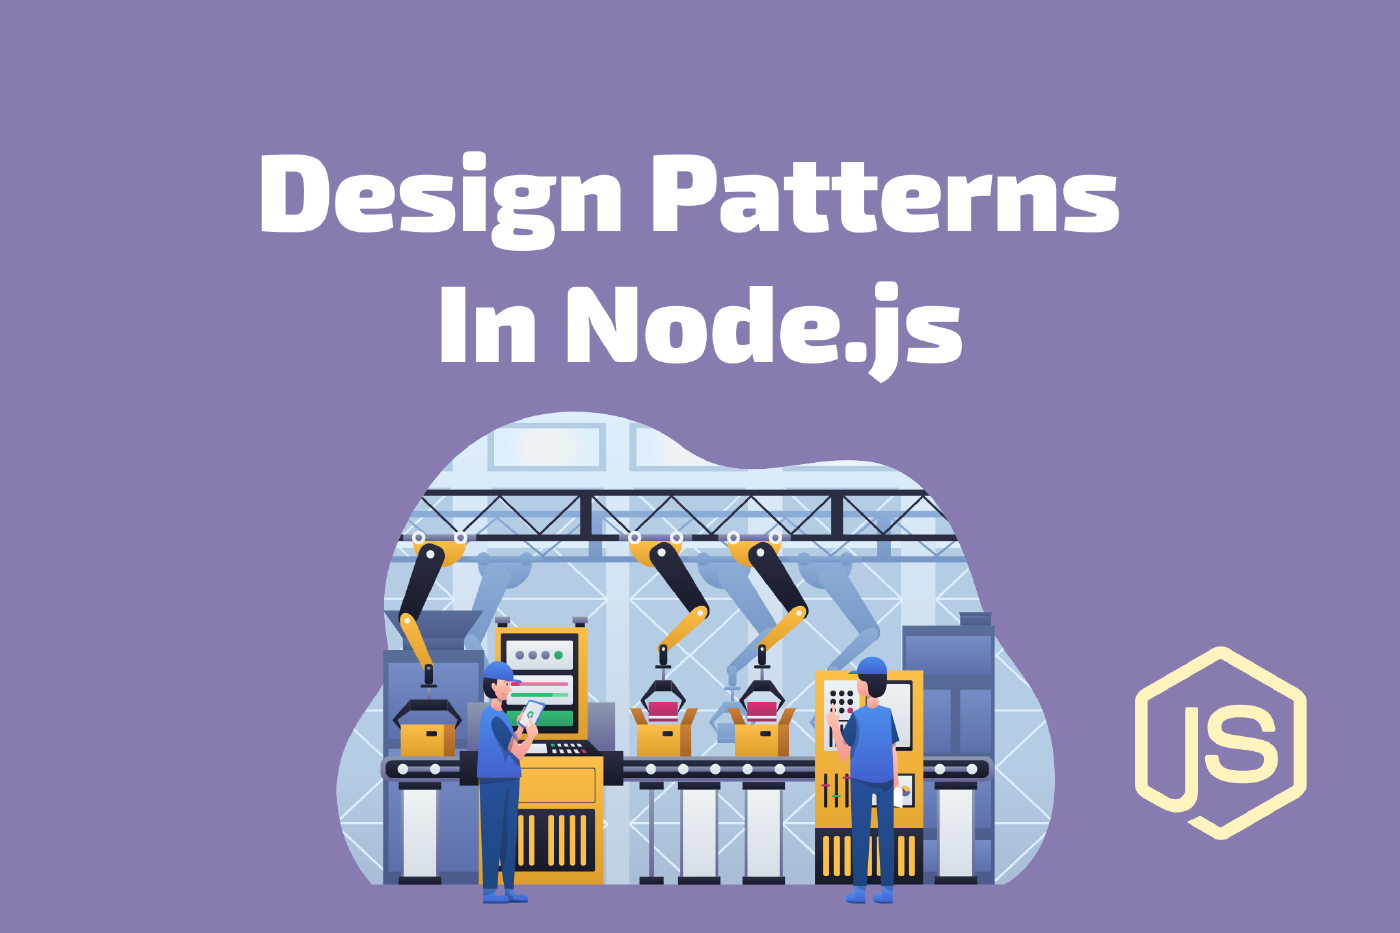 4 Design Patterns in Node.js You Should Know